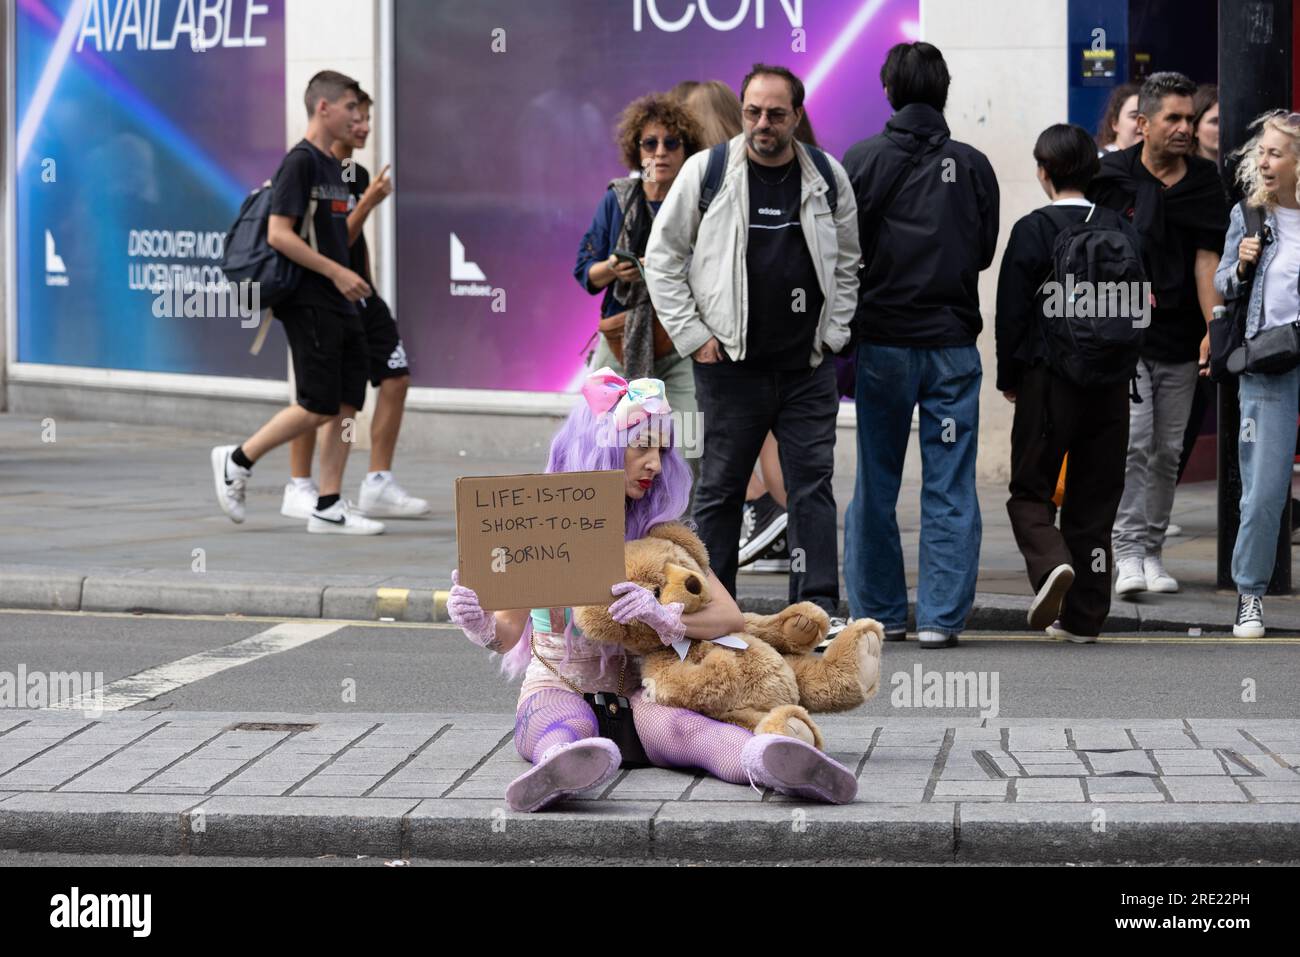 Frau saß auf der Shaftesbury Avenue und hielt ein Plakat mit der Aufschrift "Life is too short to be langweilig", Londons West End, England, Großbritannien Stockfoto